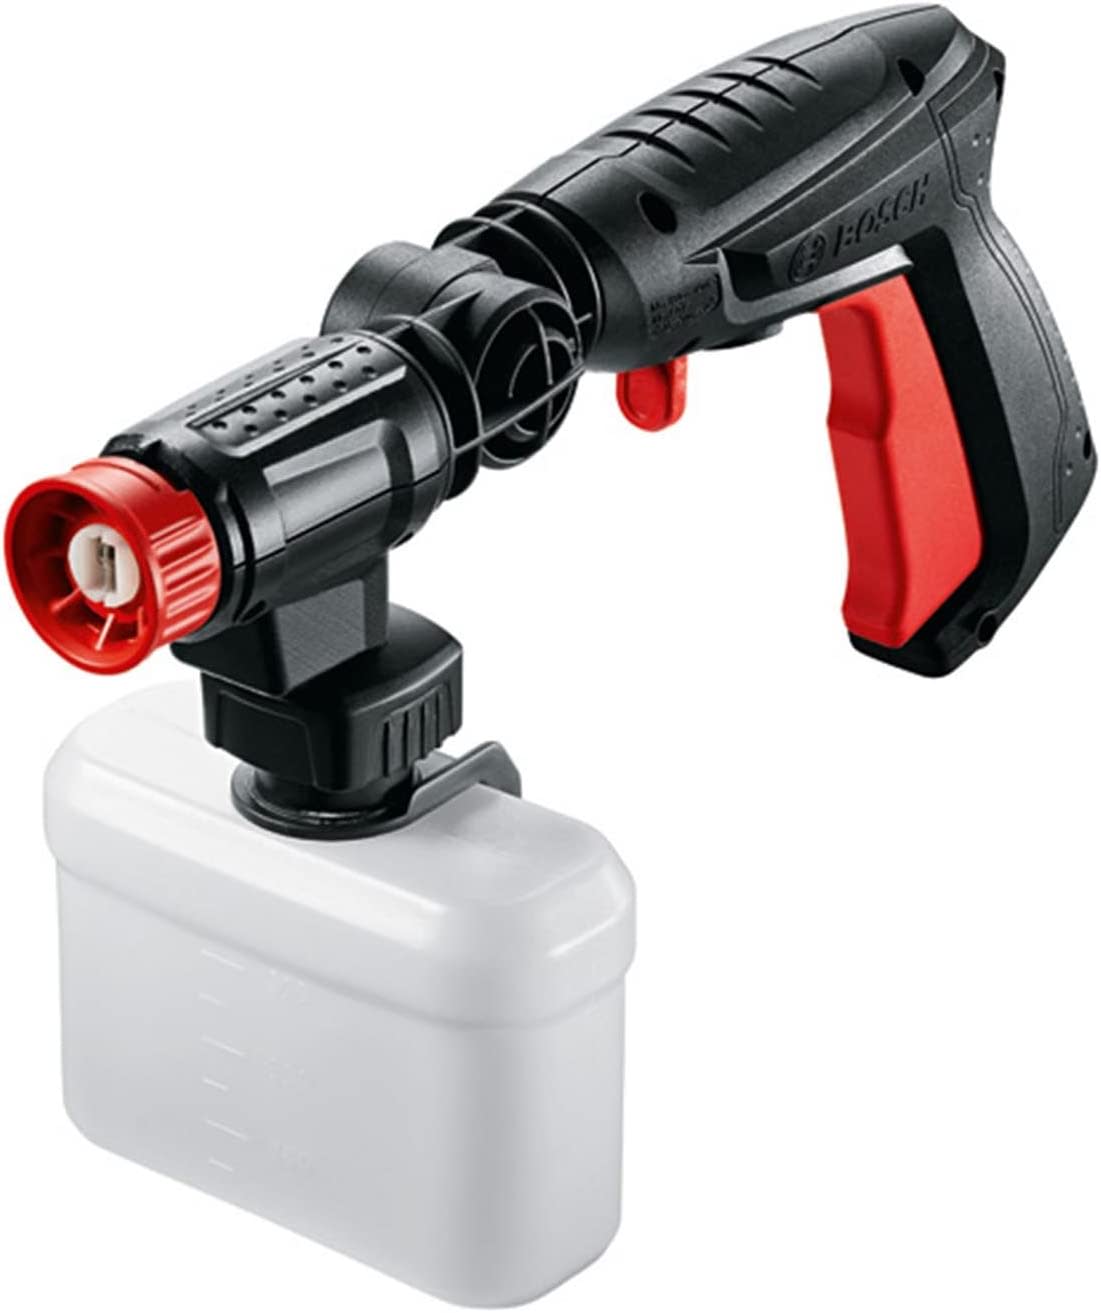 Bosch Home & Garden 360-Degree Gun Pressure Washer